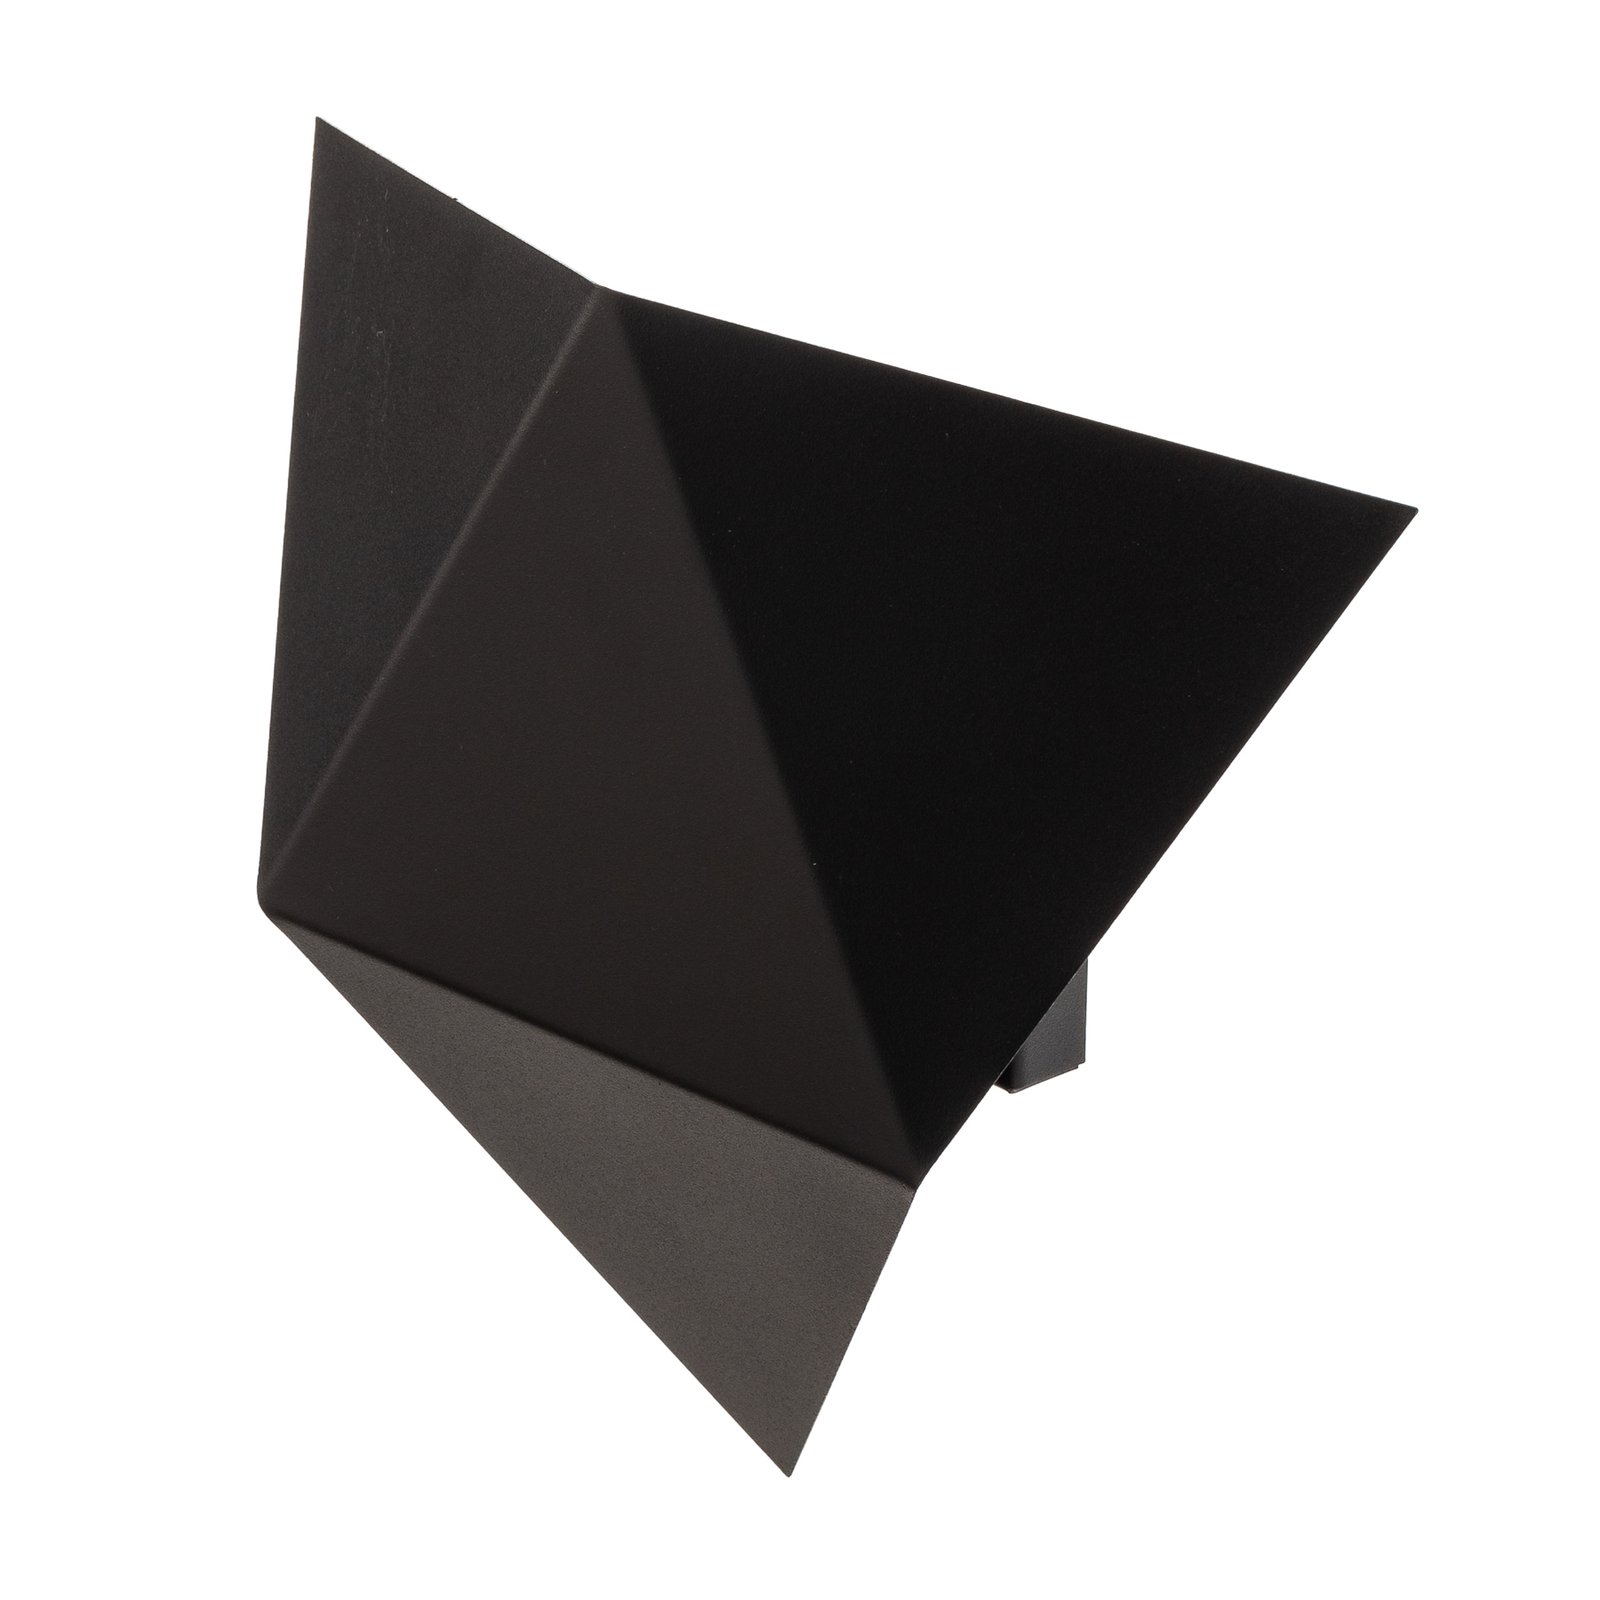 Shield væglampe i kantet form, sort